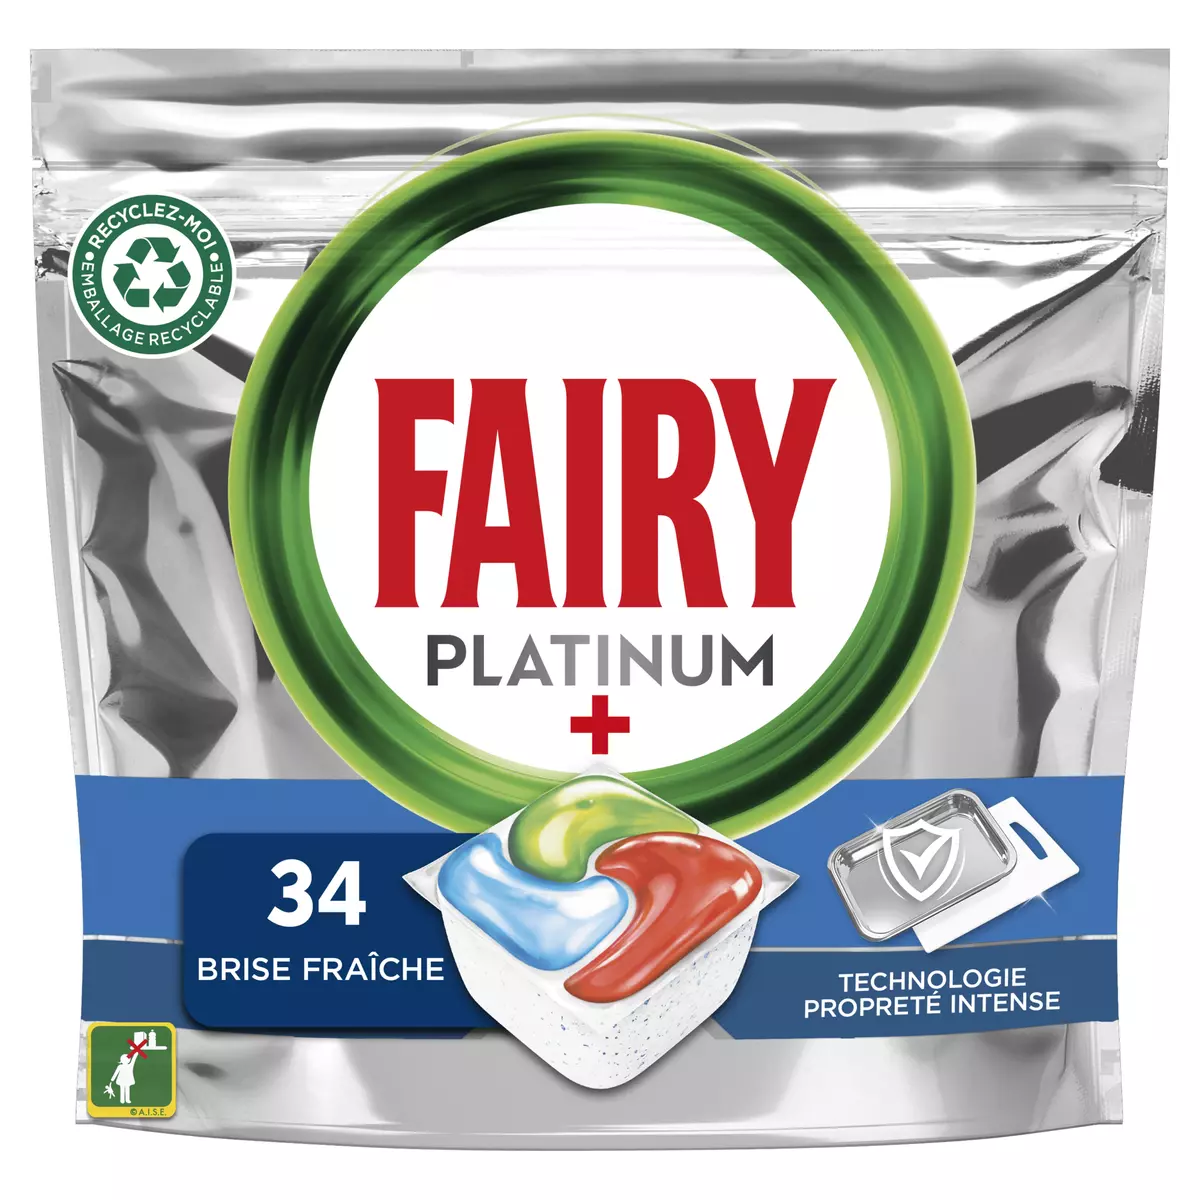 FAIRY Platinum+ tablettes lave vaisselle tout en 1 34 tablettes pas cher 